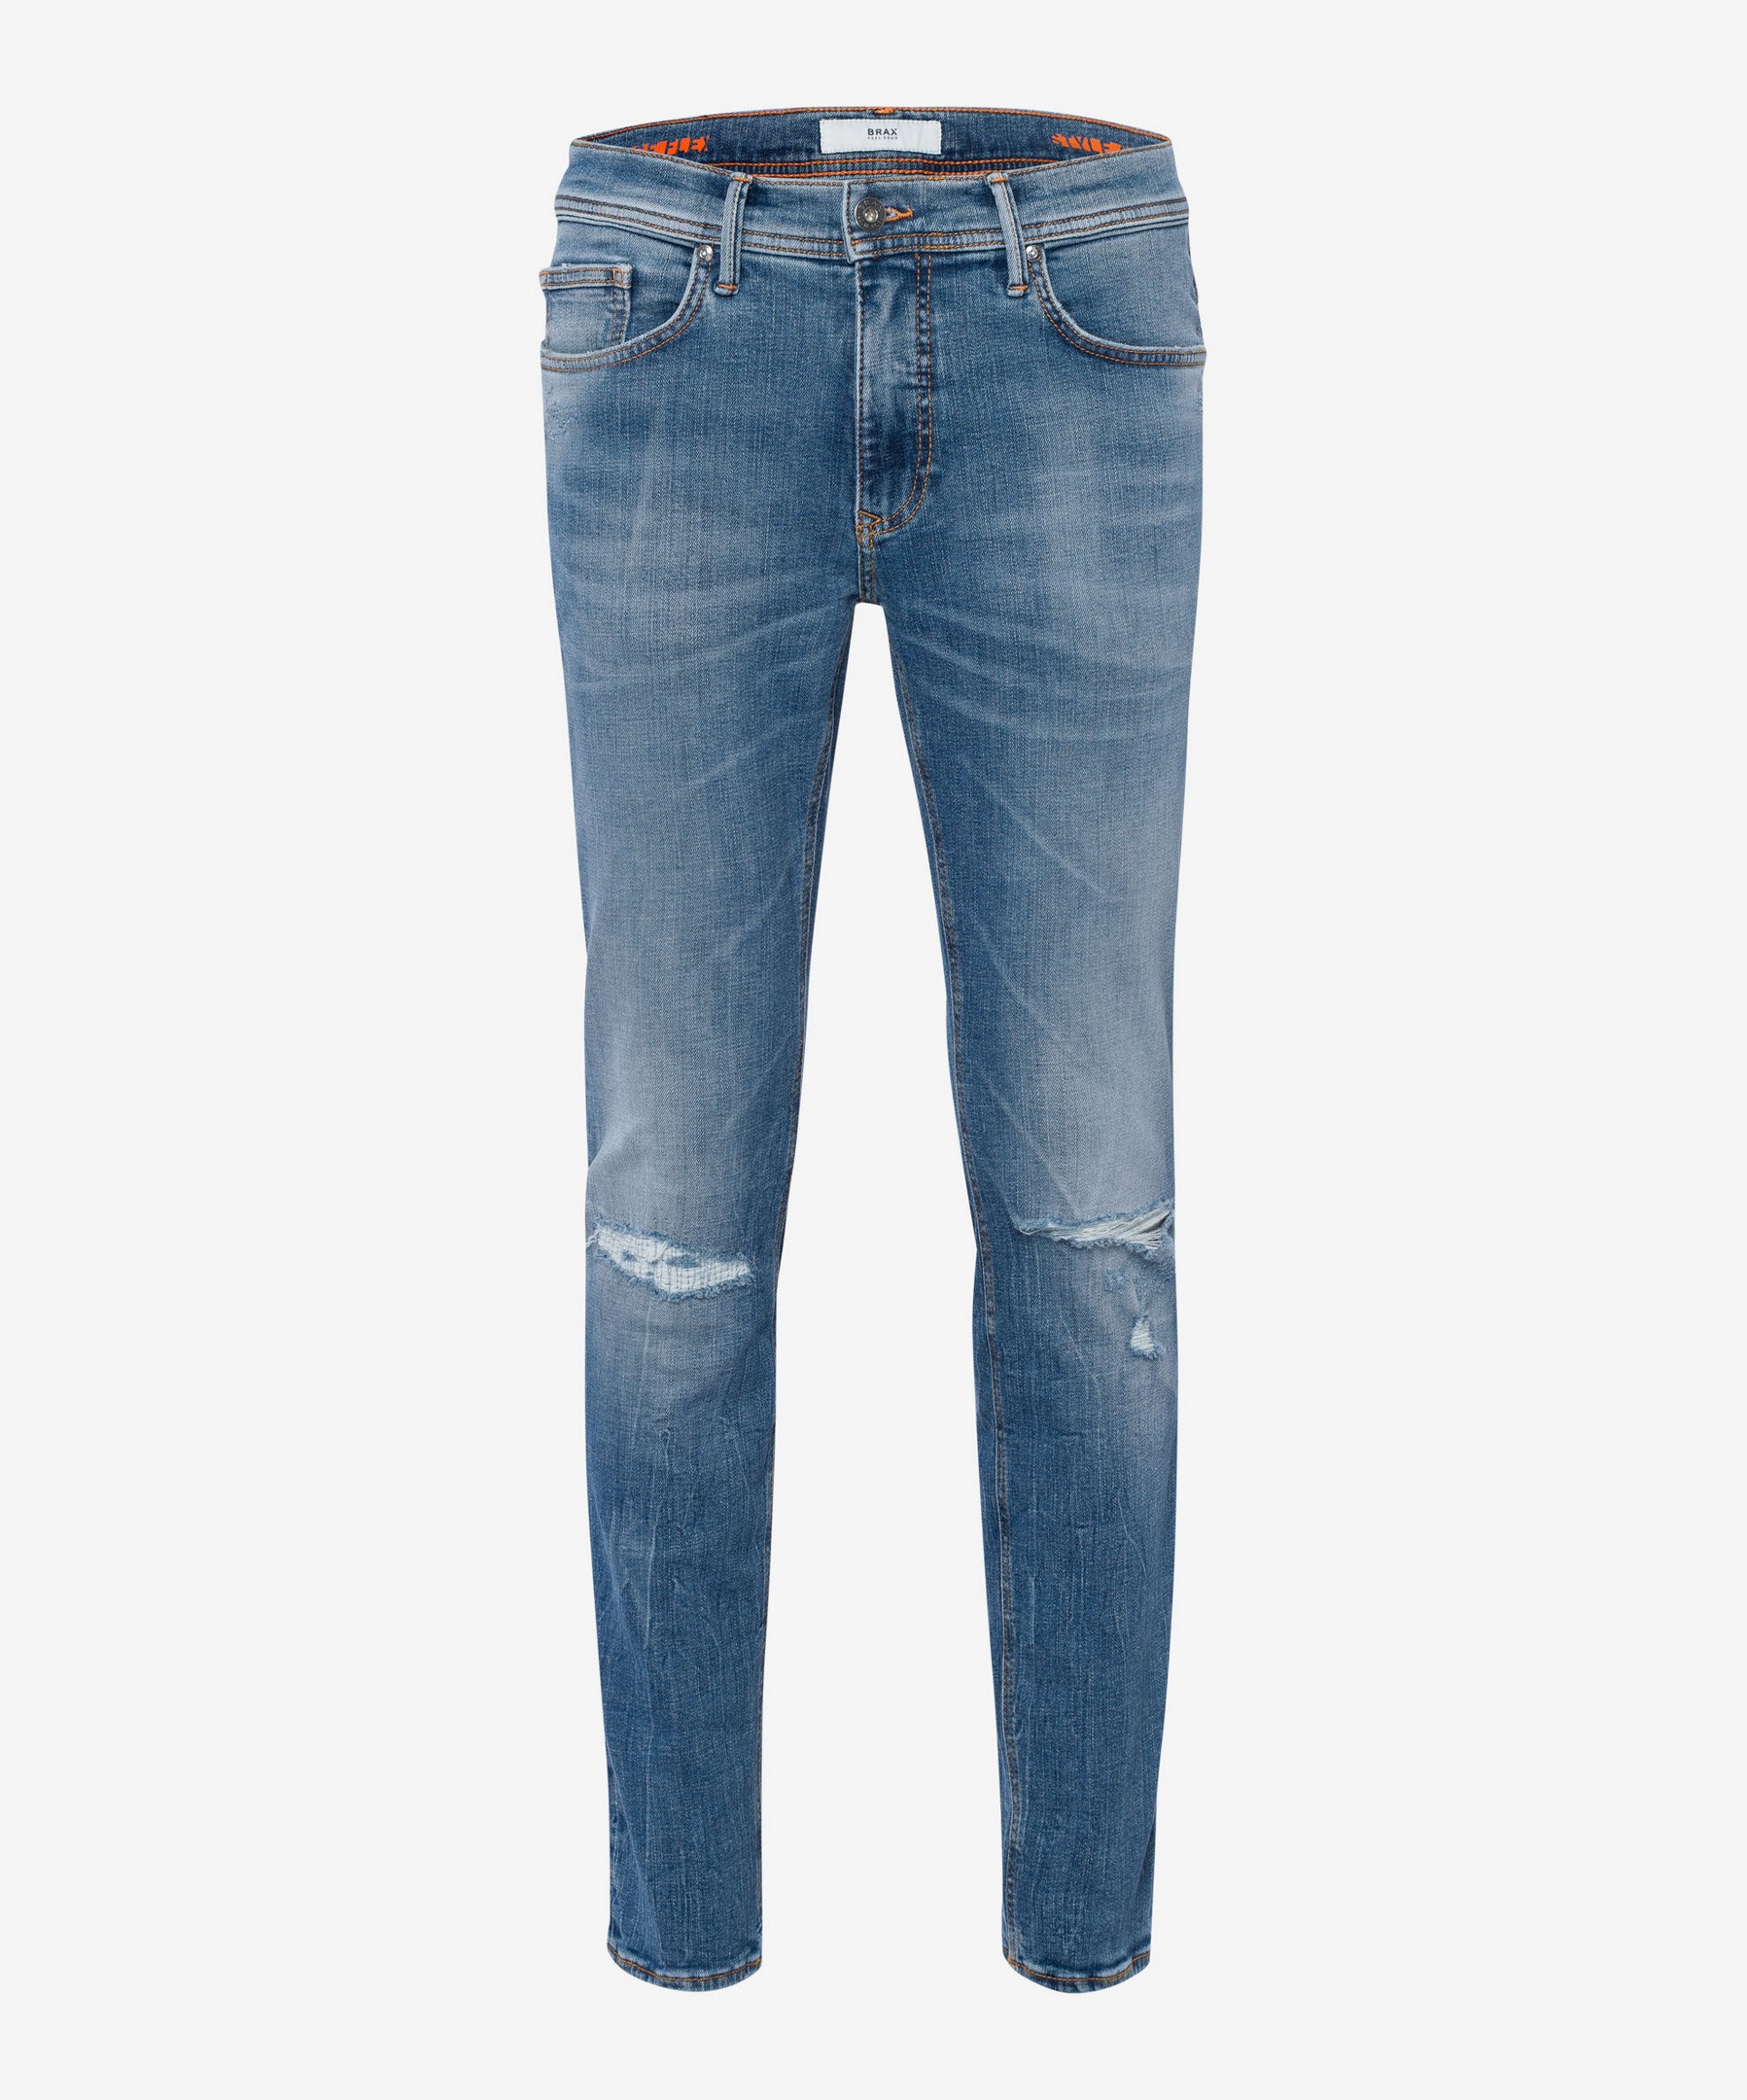 Brax Chris 5-Pocket Vintage Indigo Jan Denim | Superstretch Jeans Men\'s Rozing Planet Fashion Blue Blue Hi-Flex Destroyed